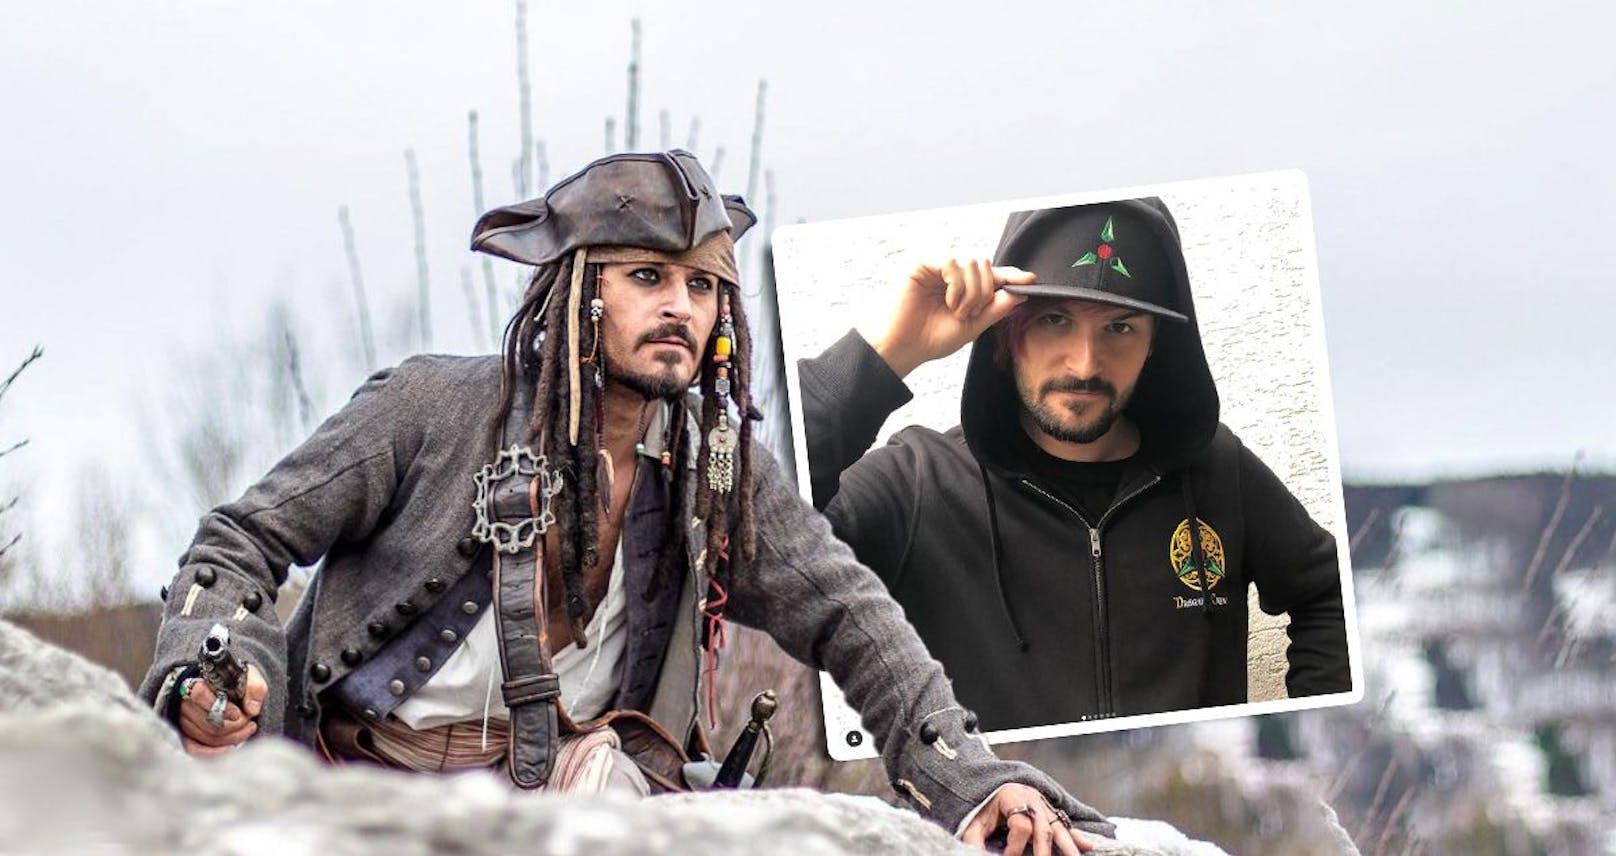 Streamer und TikToker Gerald Mayer aka @deagal_remyr in seiner Paraderolle als Pirat Jack Sparrow.